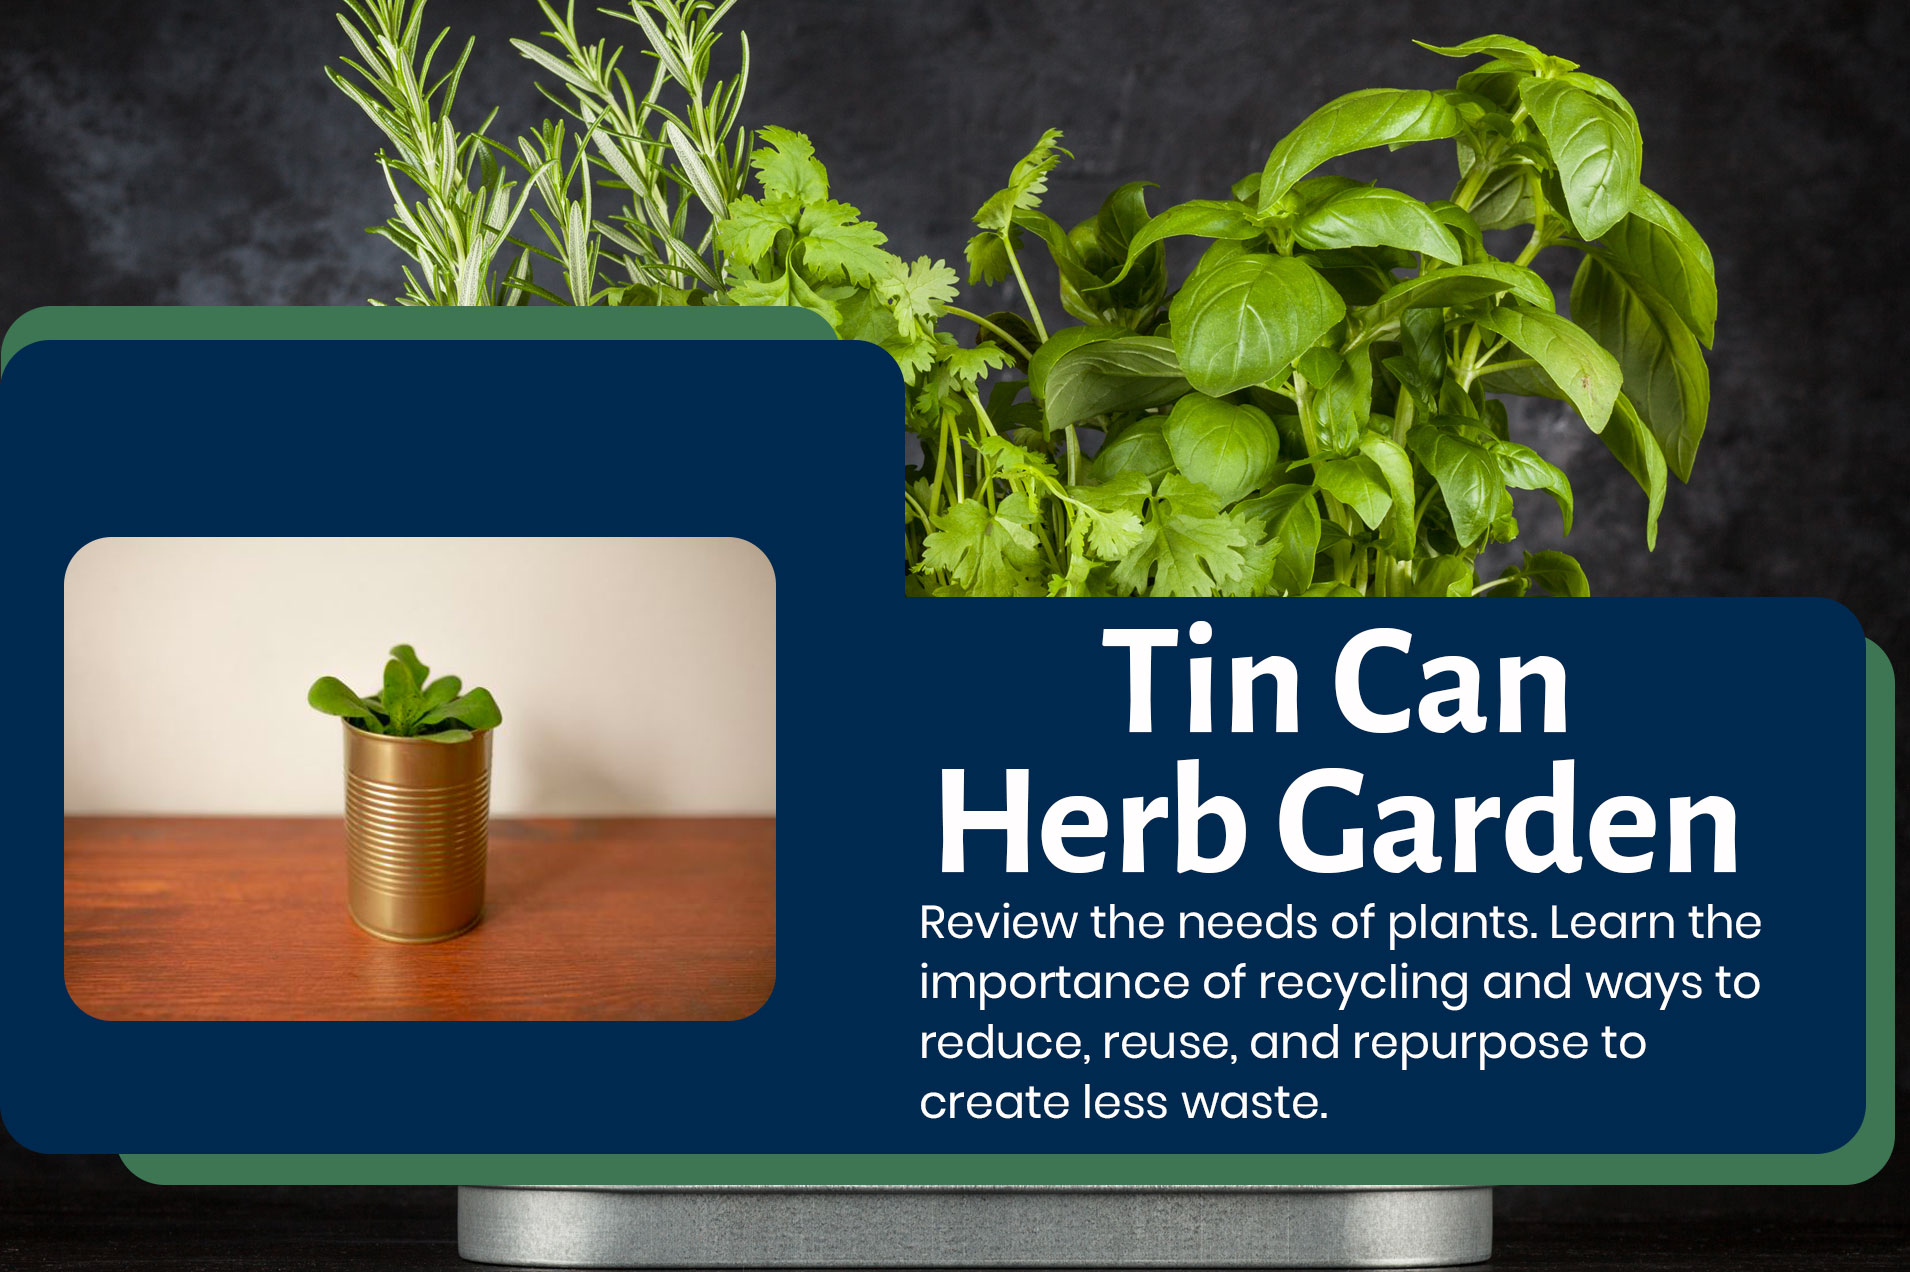 Tin Can Herb Garden